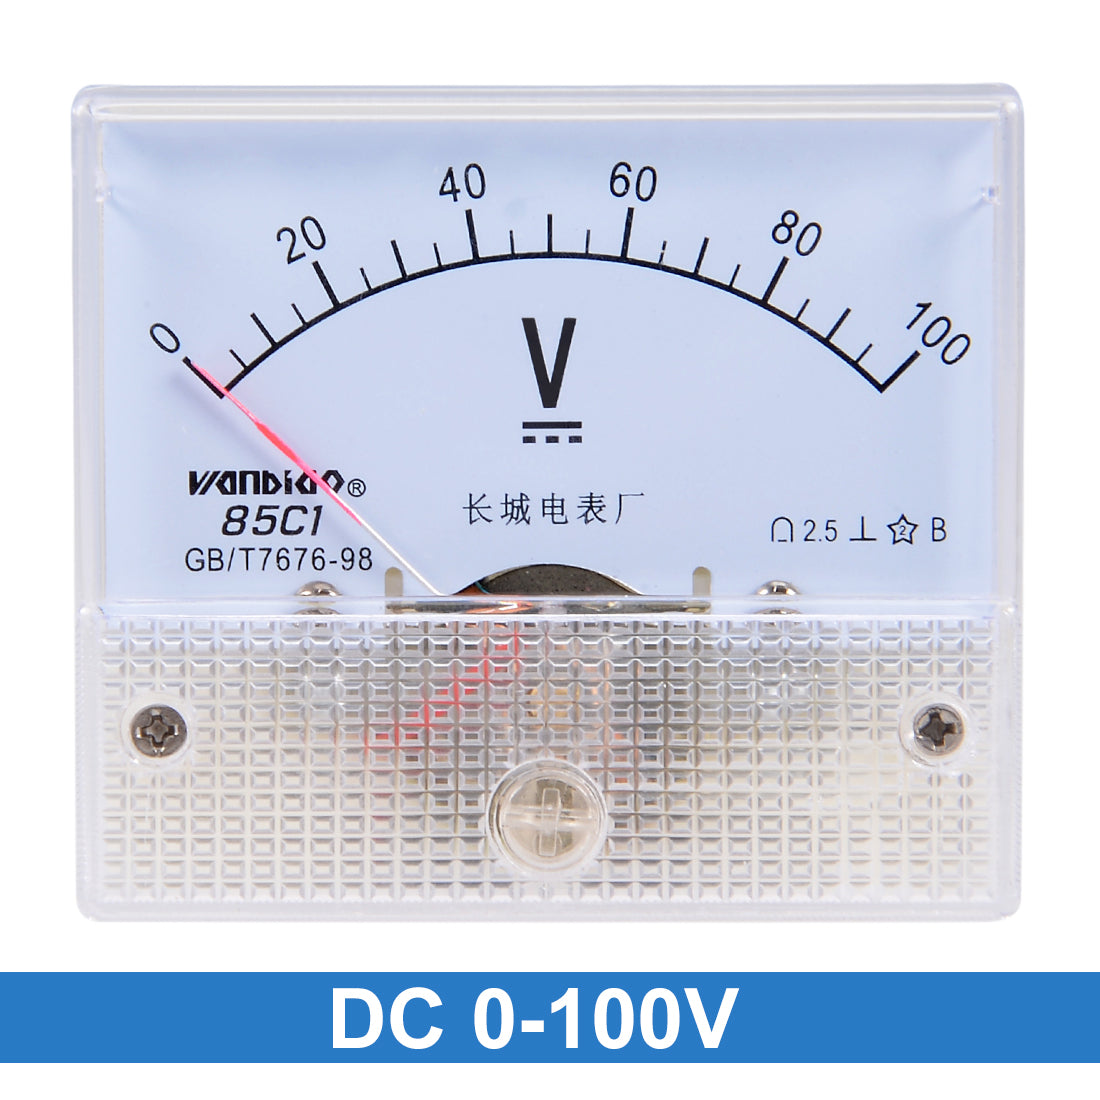 uxcell Uxcell DC 0-100V Analog Panel Voltage Gauge Volt Meter 85C1 2.5% Error